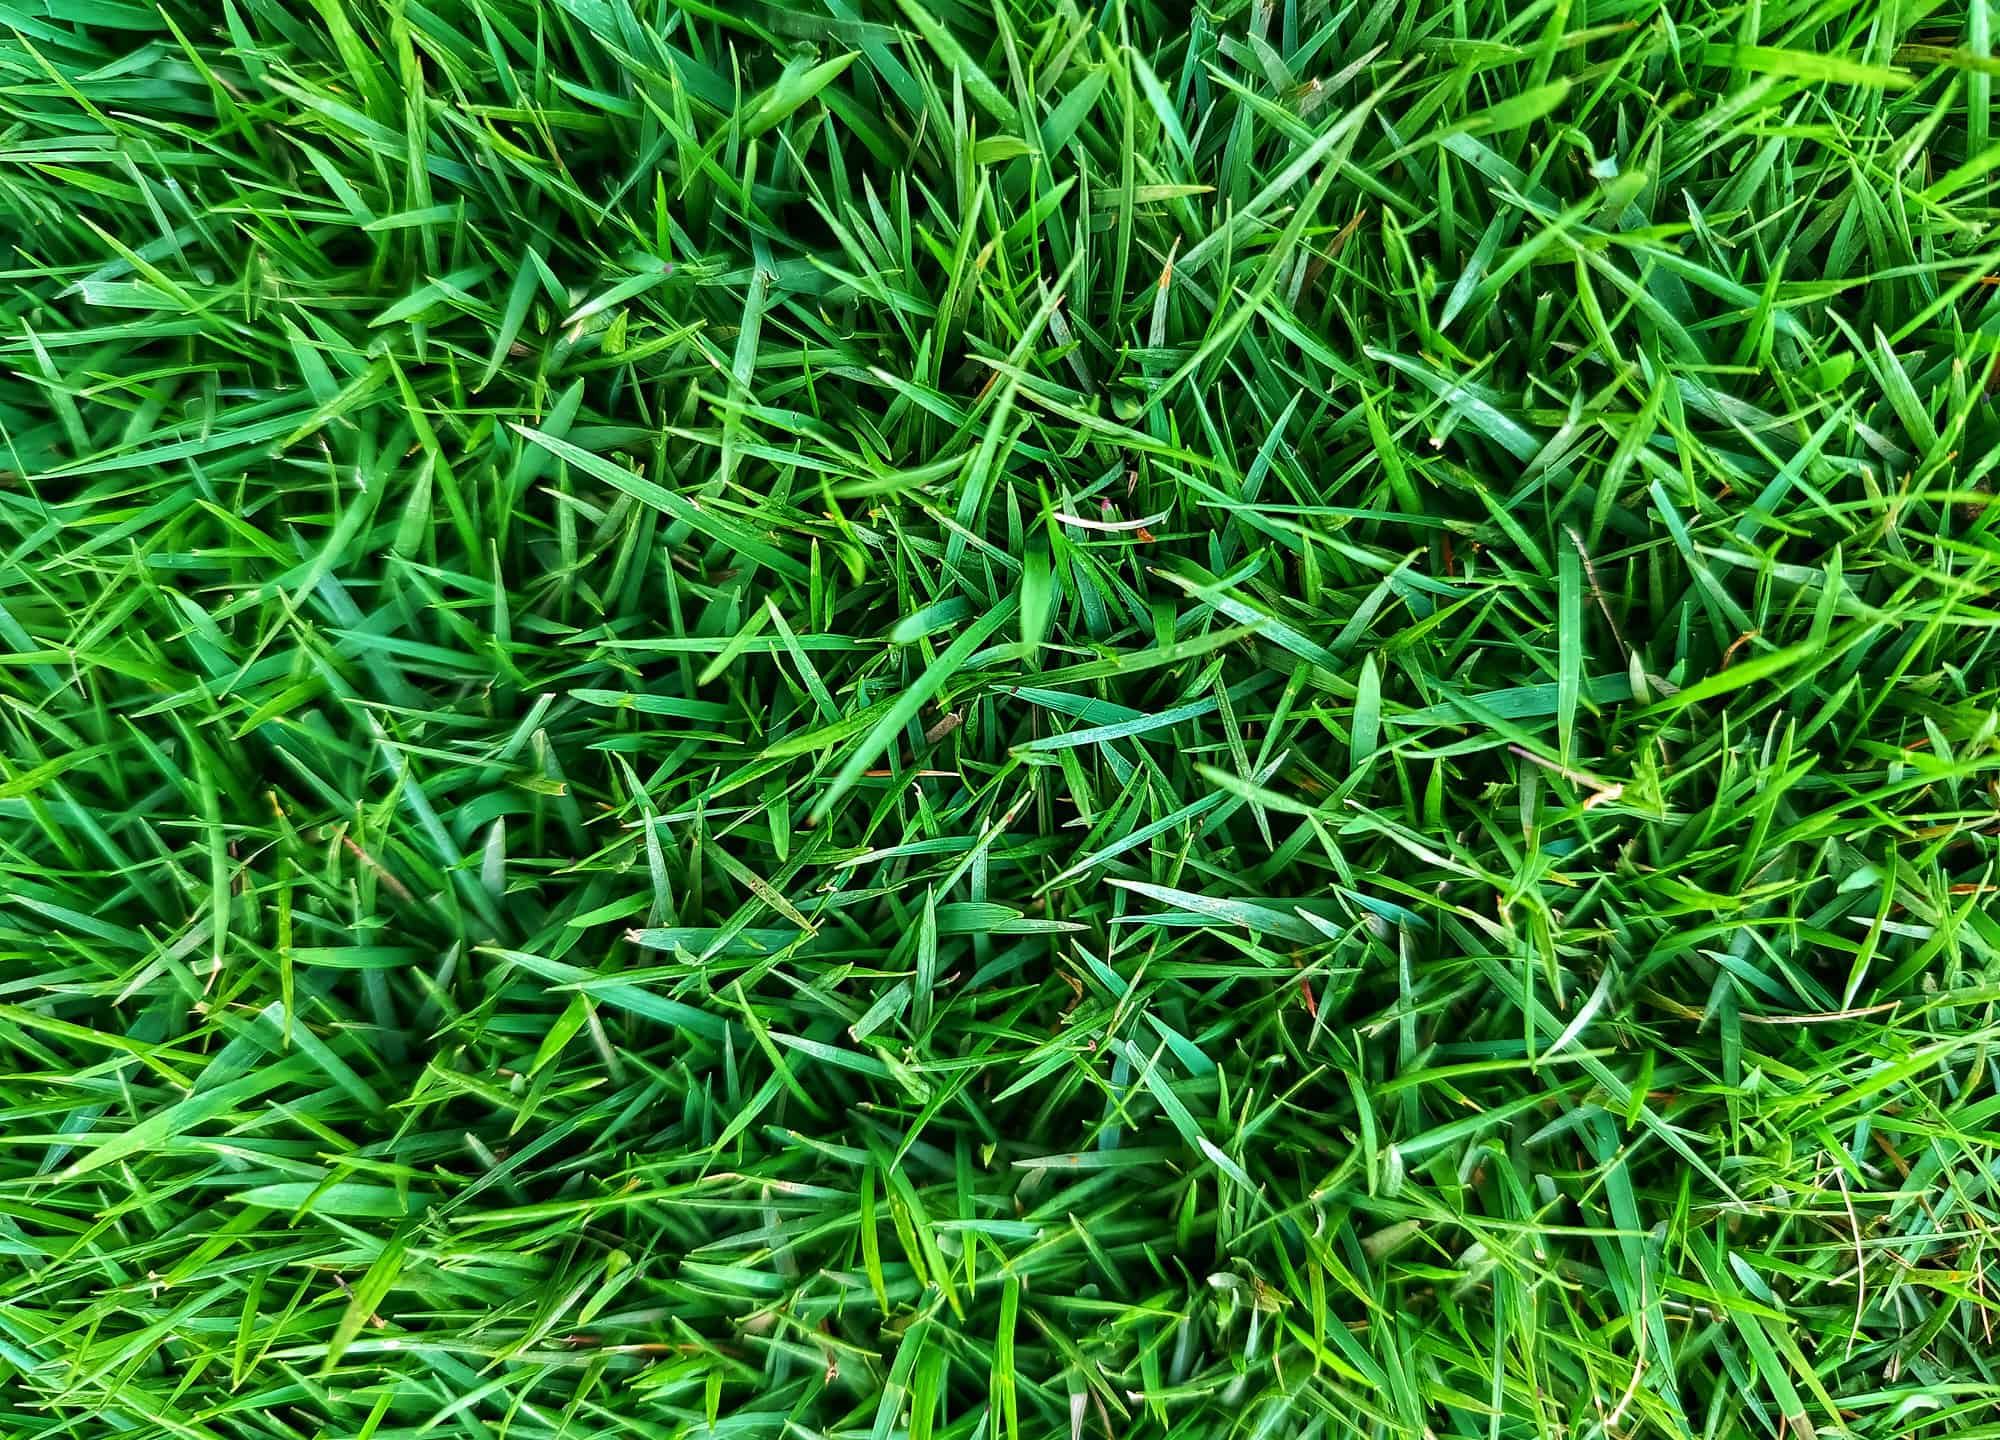 Zoysia grass